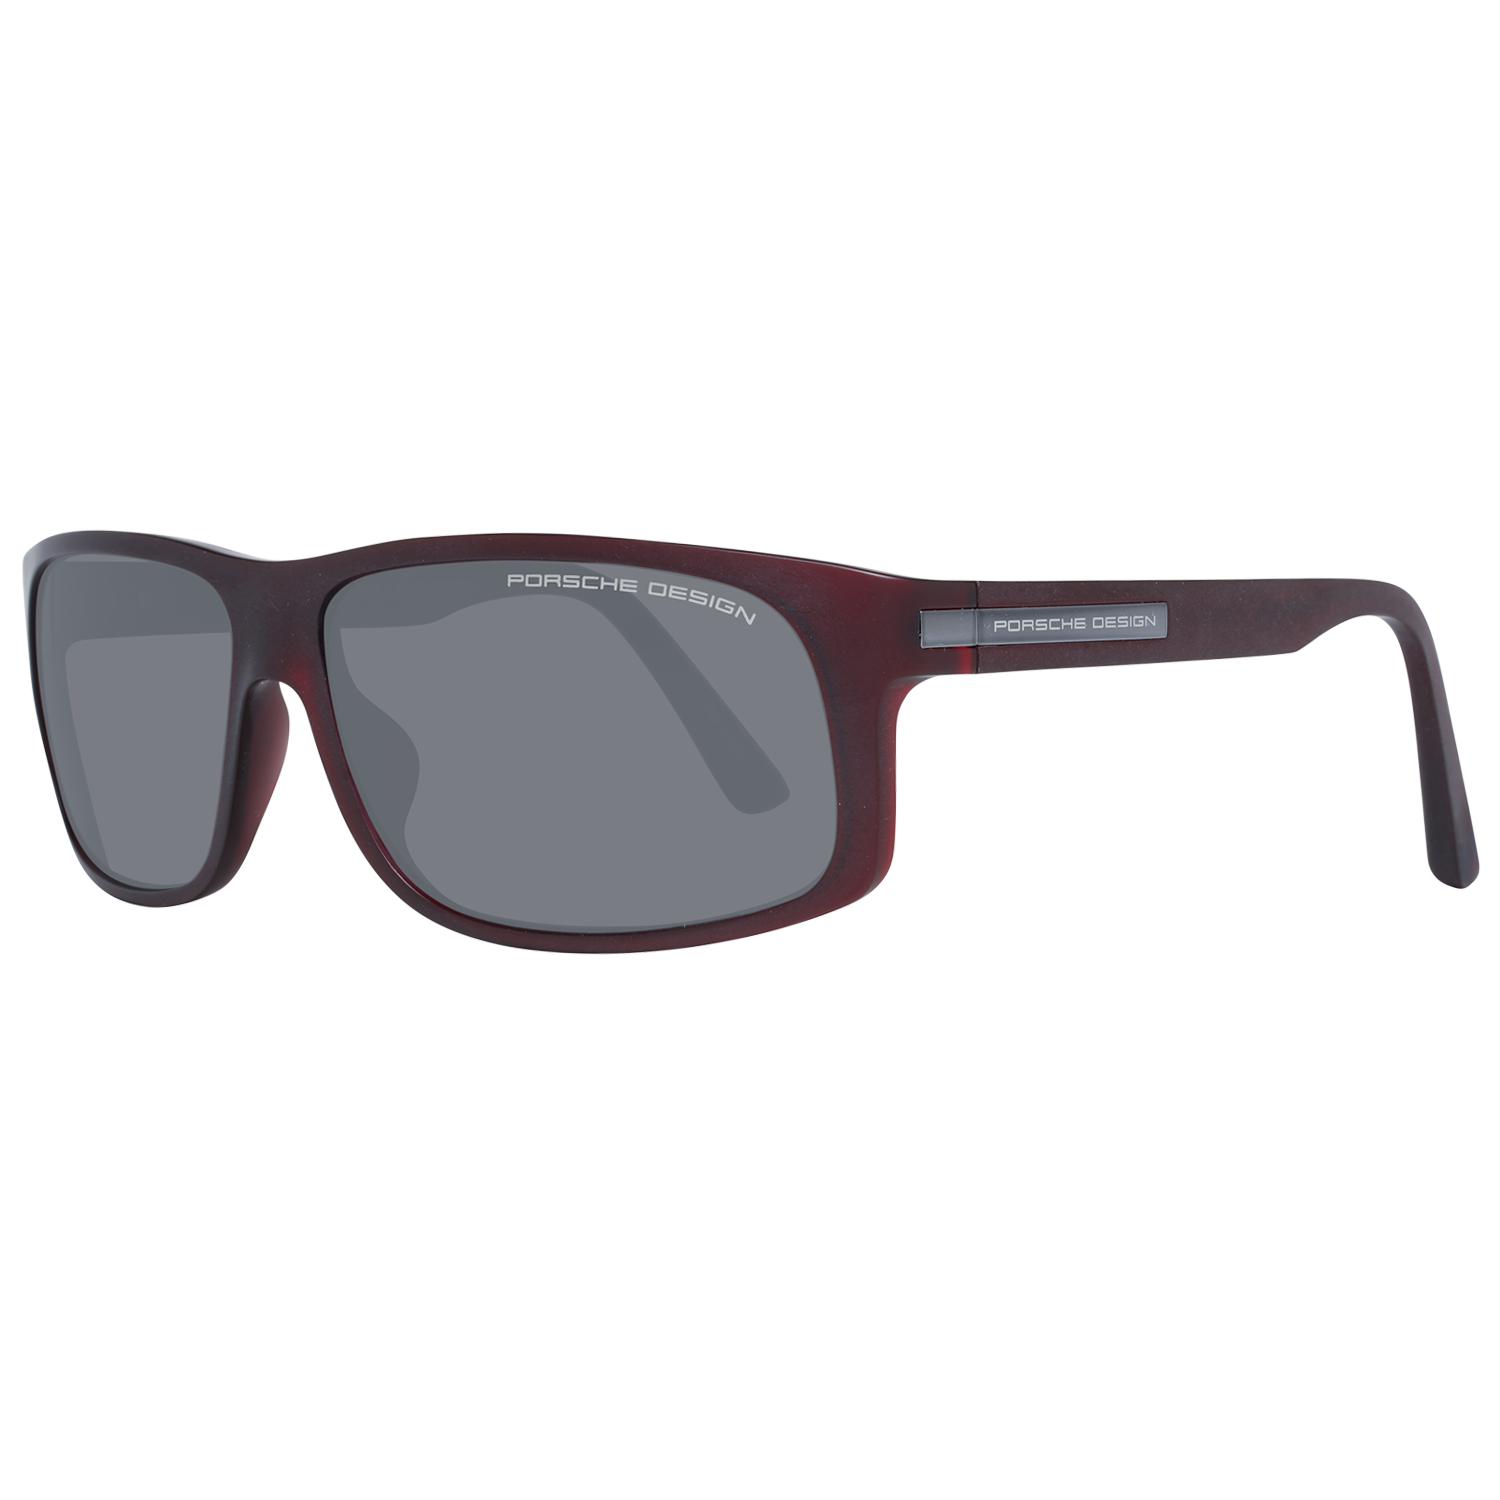 Porsche Design Sunglasses Porsche Design Sunglasses Polarized P8572 D 64 Eyeglasses Eyewear UK USA Australia 